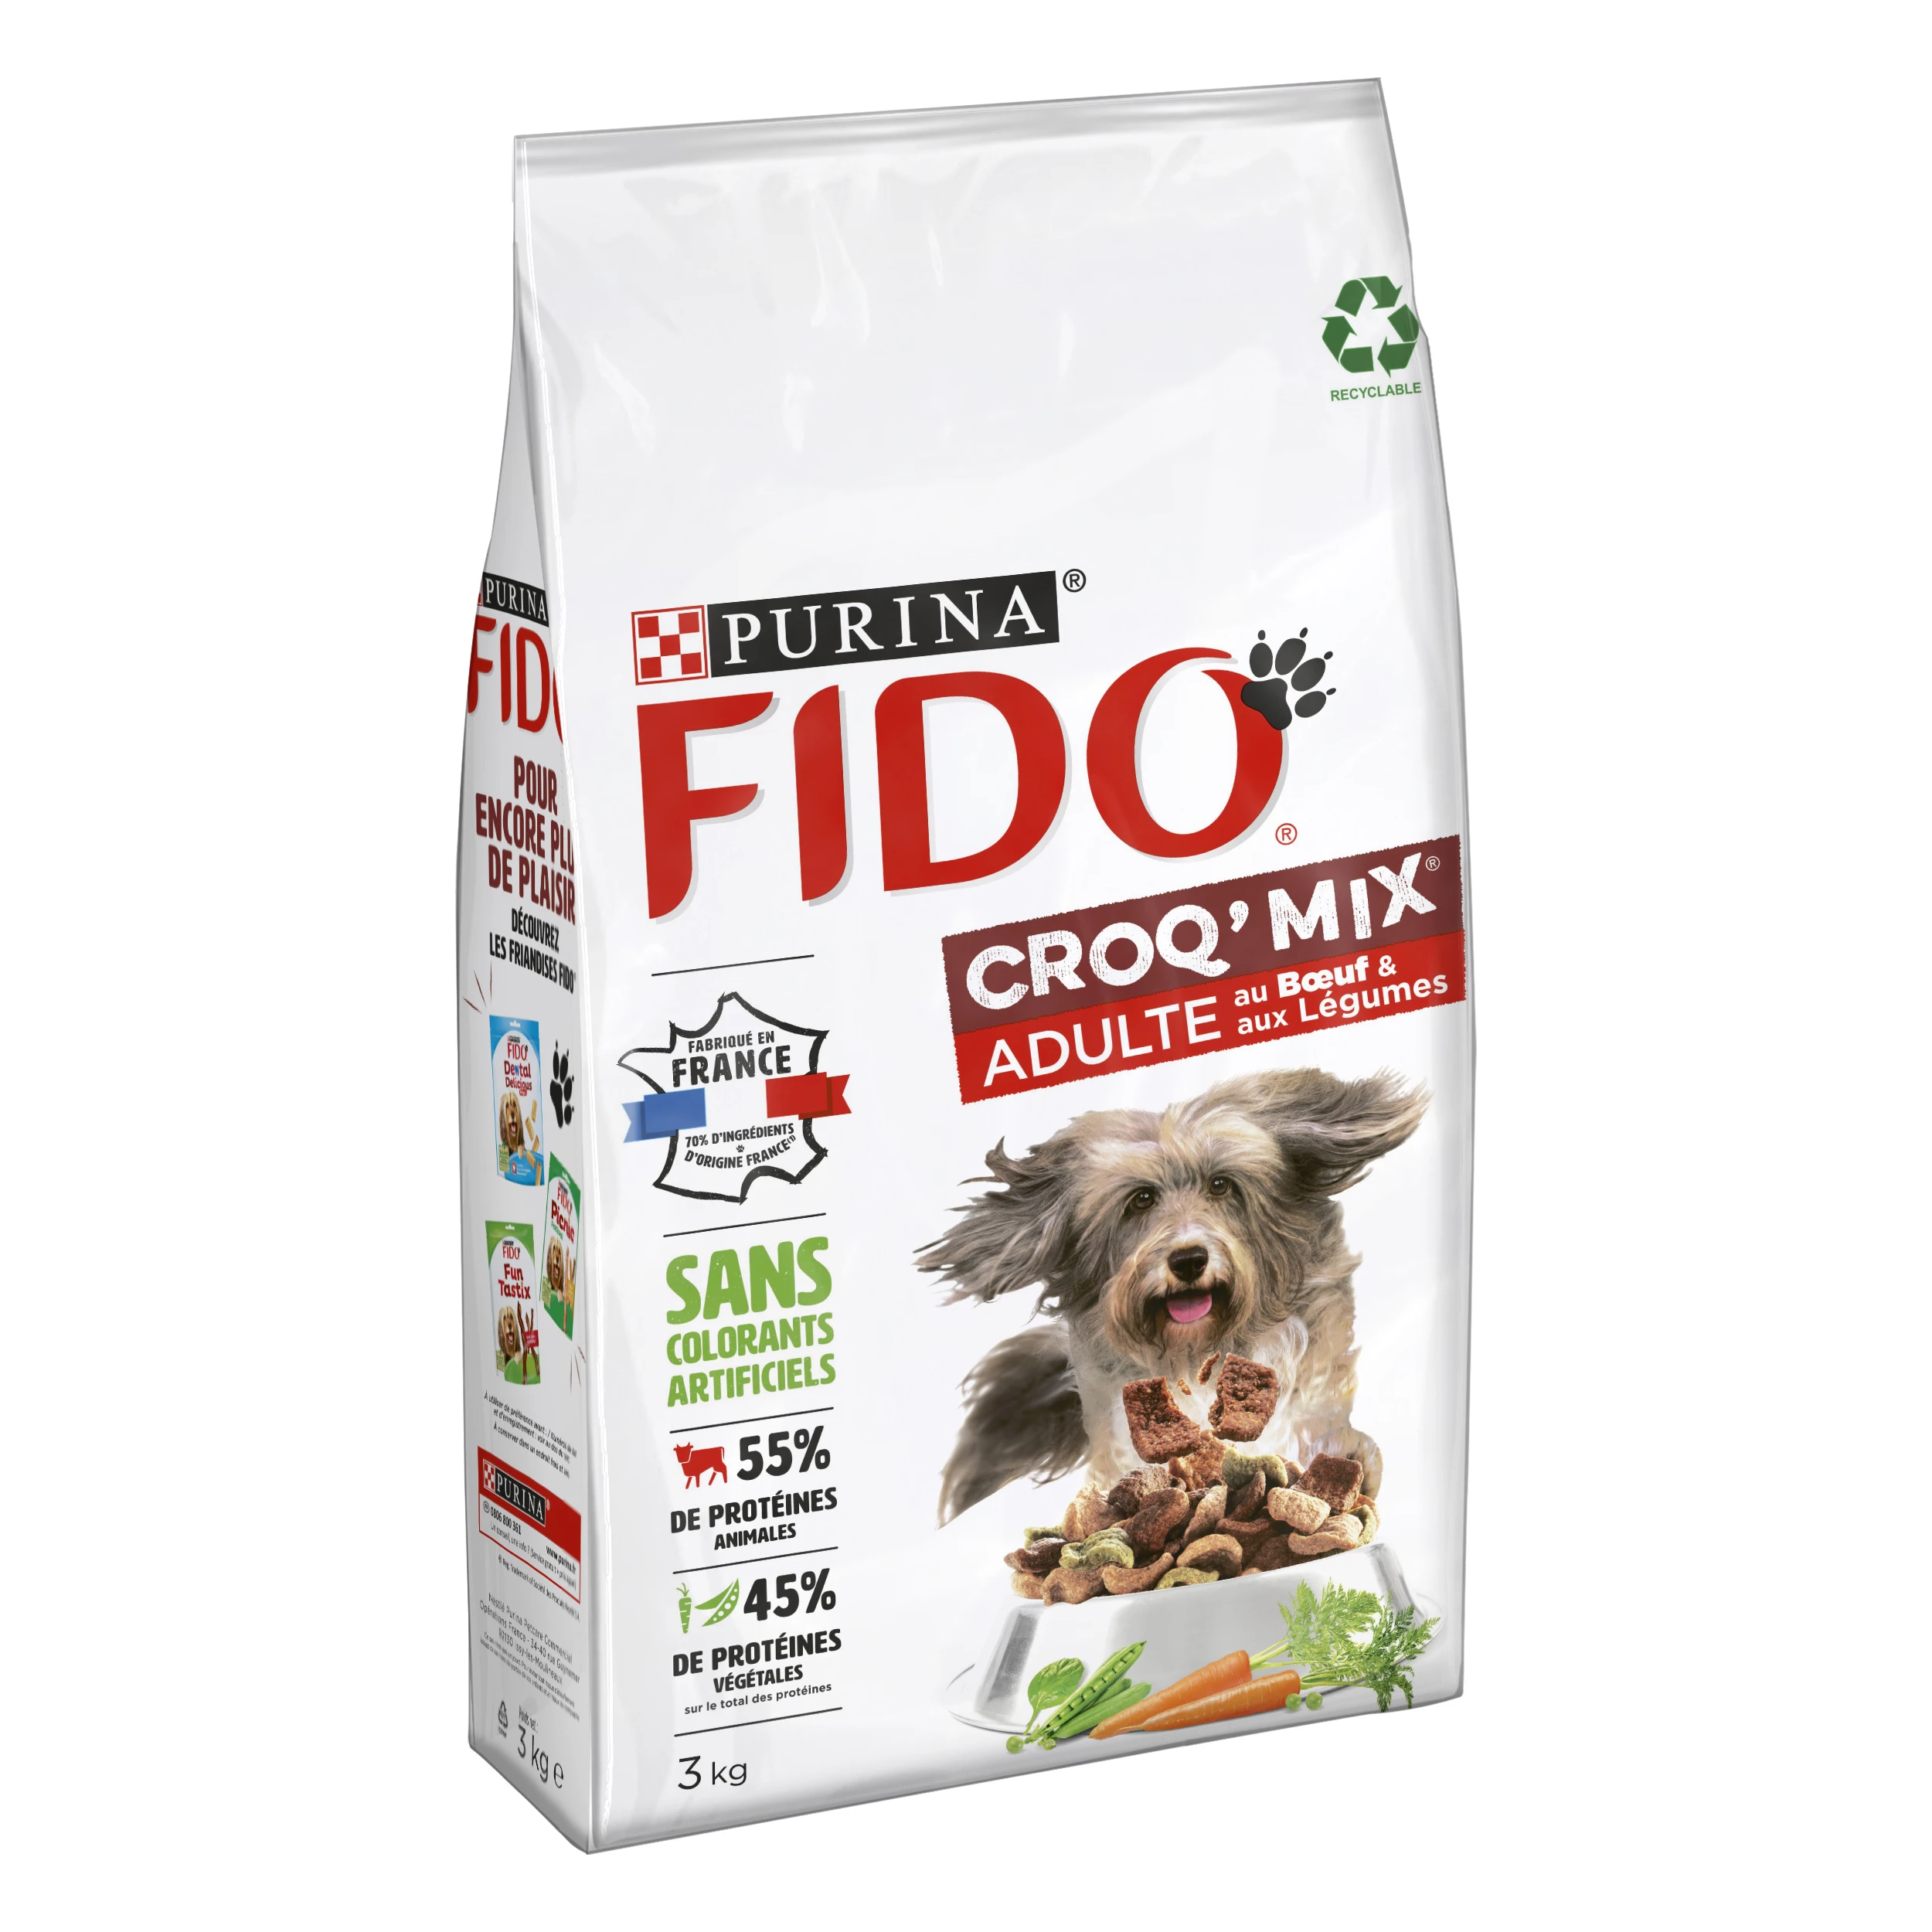 Croq' mix brok voor volwassen honden met rundvlees en groenten 3kg - PURINA FIDO